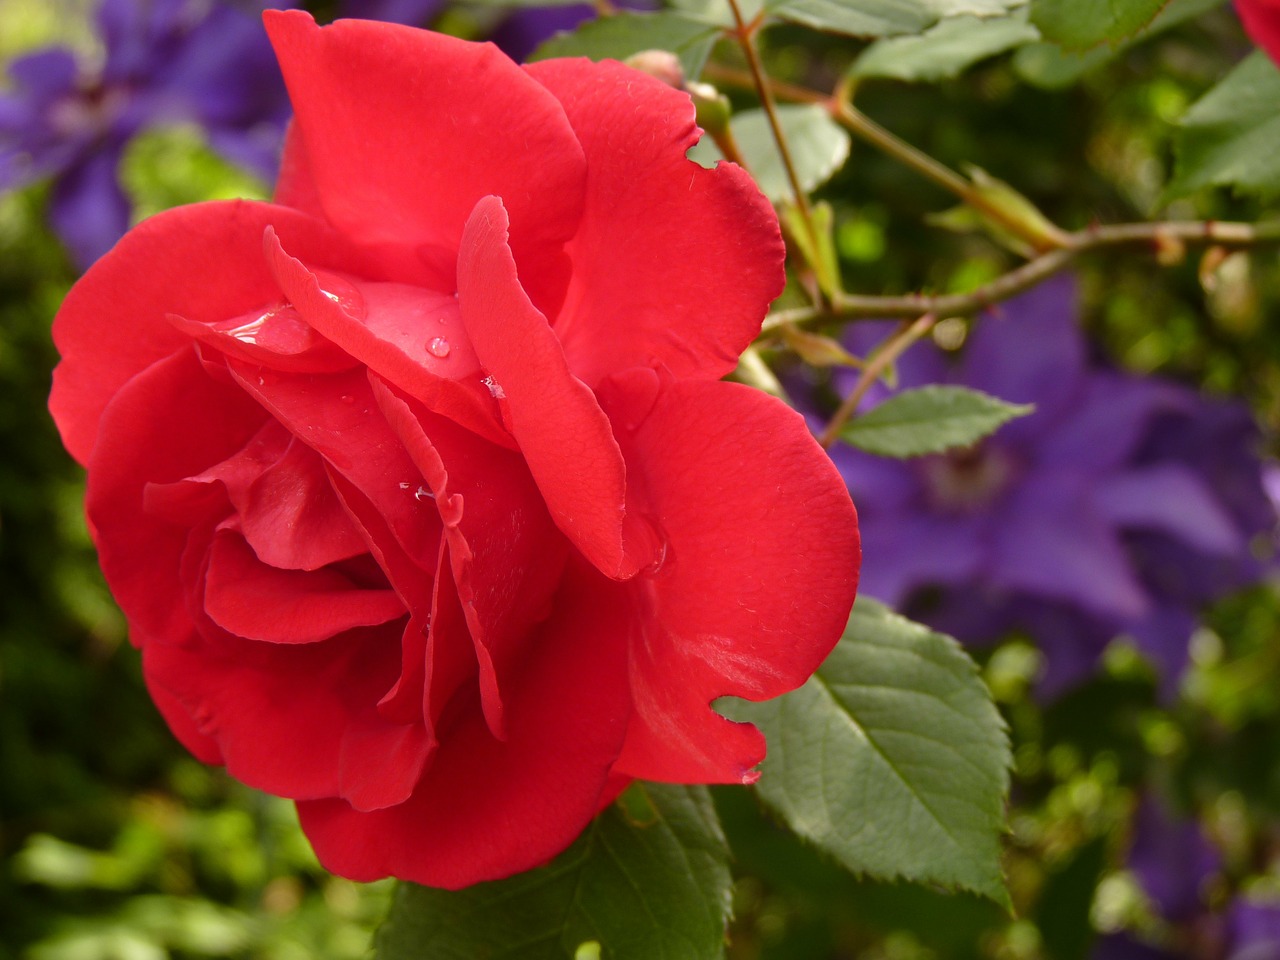 Image - rose blossom bloom red rose